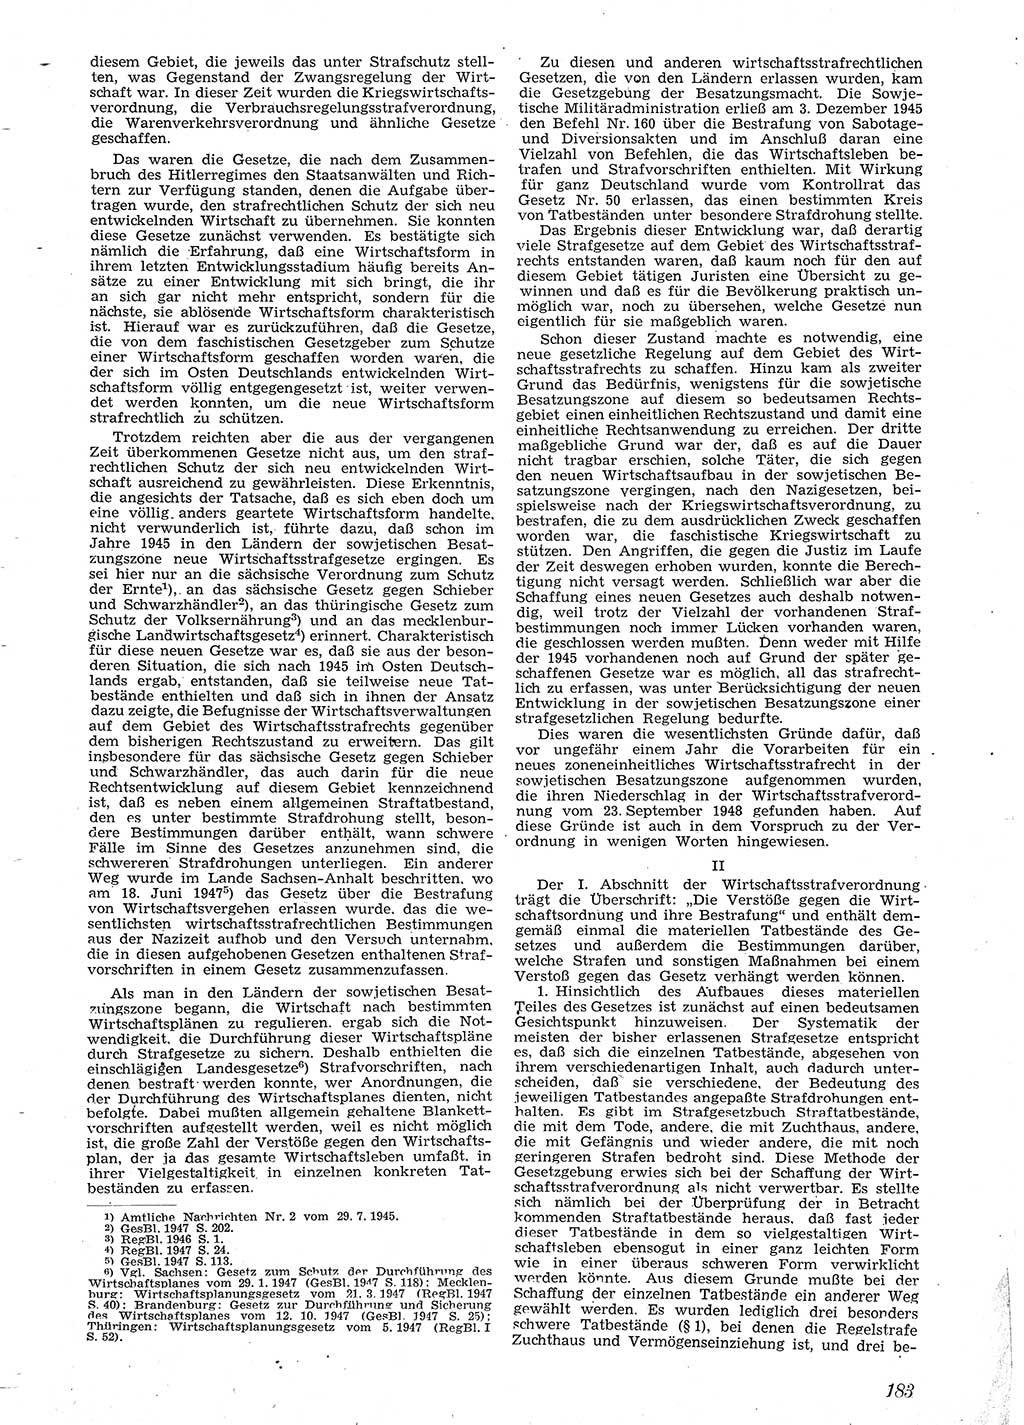 Neue Justiz (NJ), Zeitschrift für Recht und Rechtswissenschaft [Sowjetische Besatzungszone (SBZ) Deutschland], 2. Jahrgang 1948, Seite 183 (NJ SBZ Dtl. 1948, S. 183)